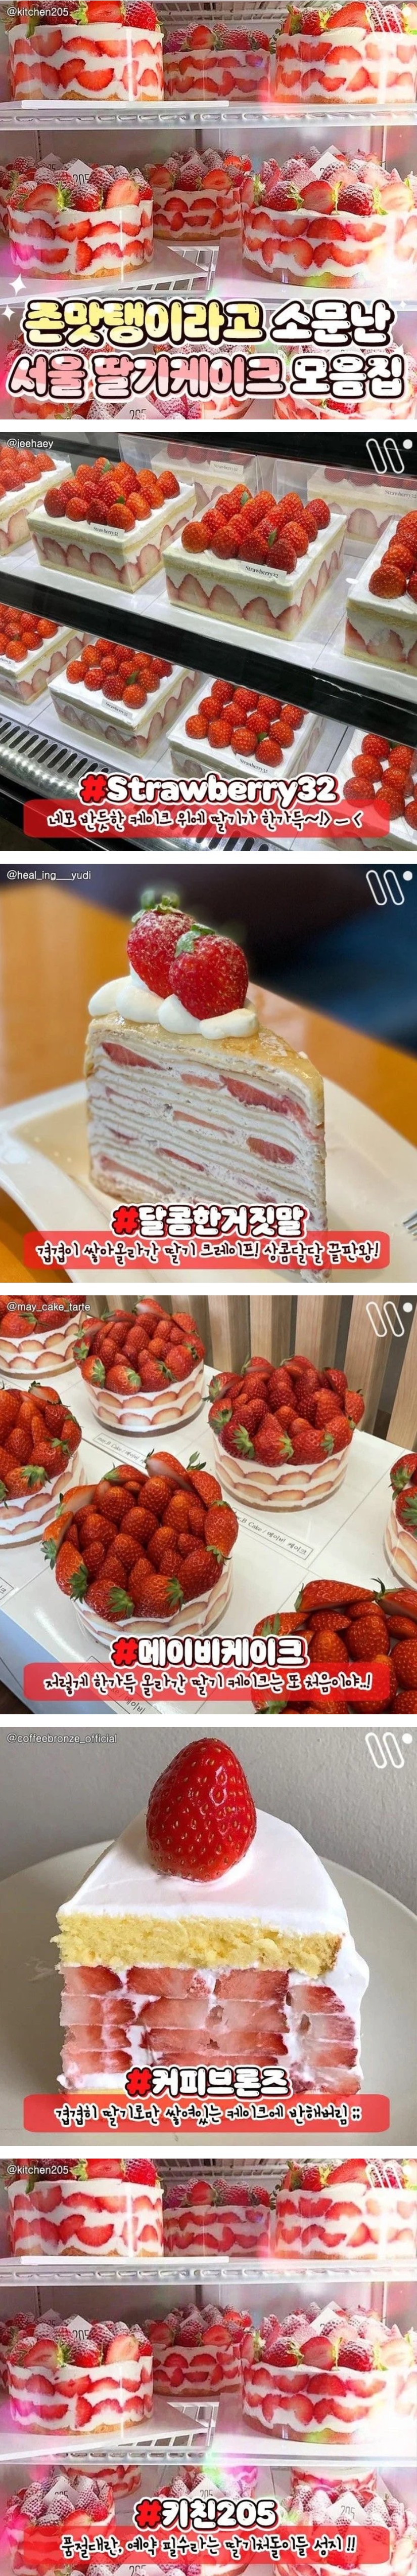 맛있다고 소문난 서울 딸기케이크 모음